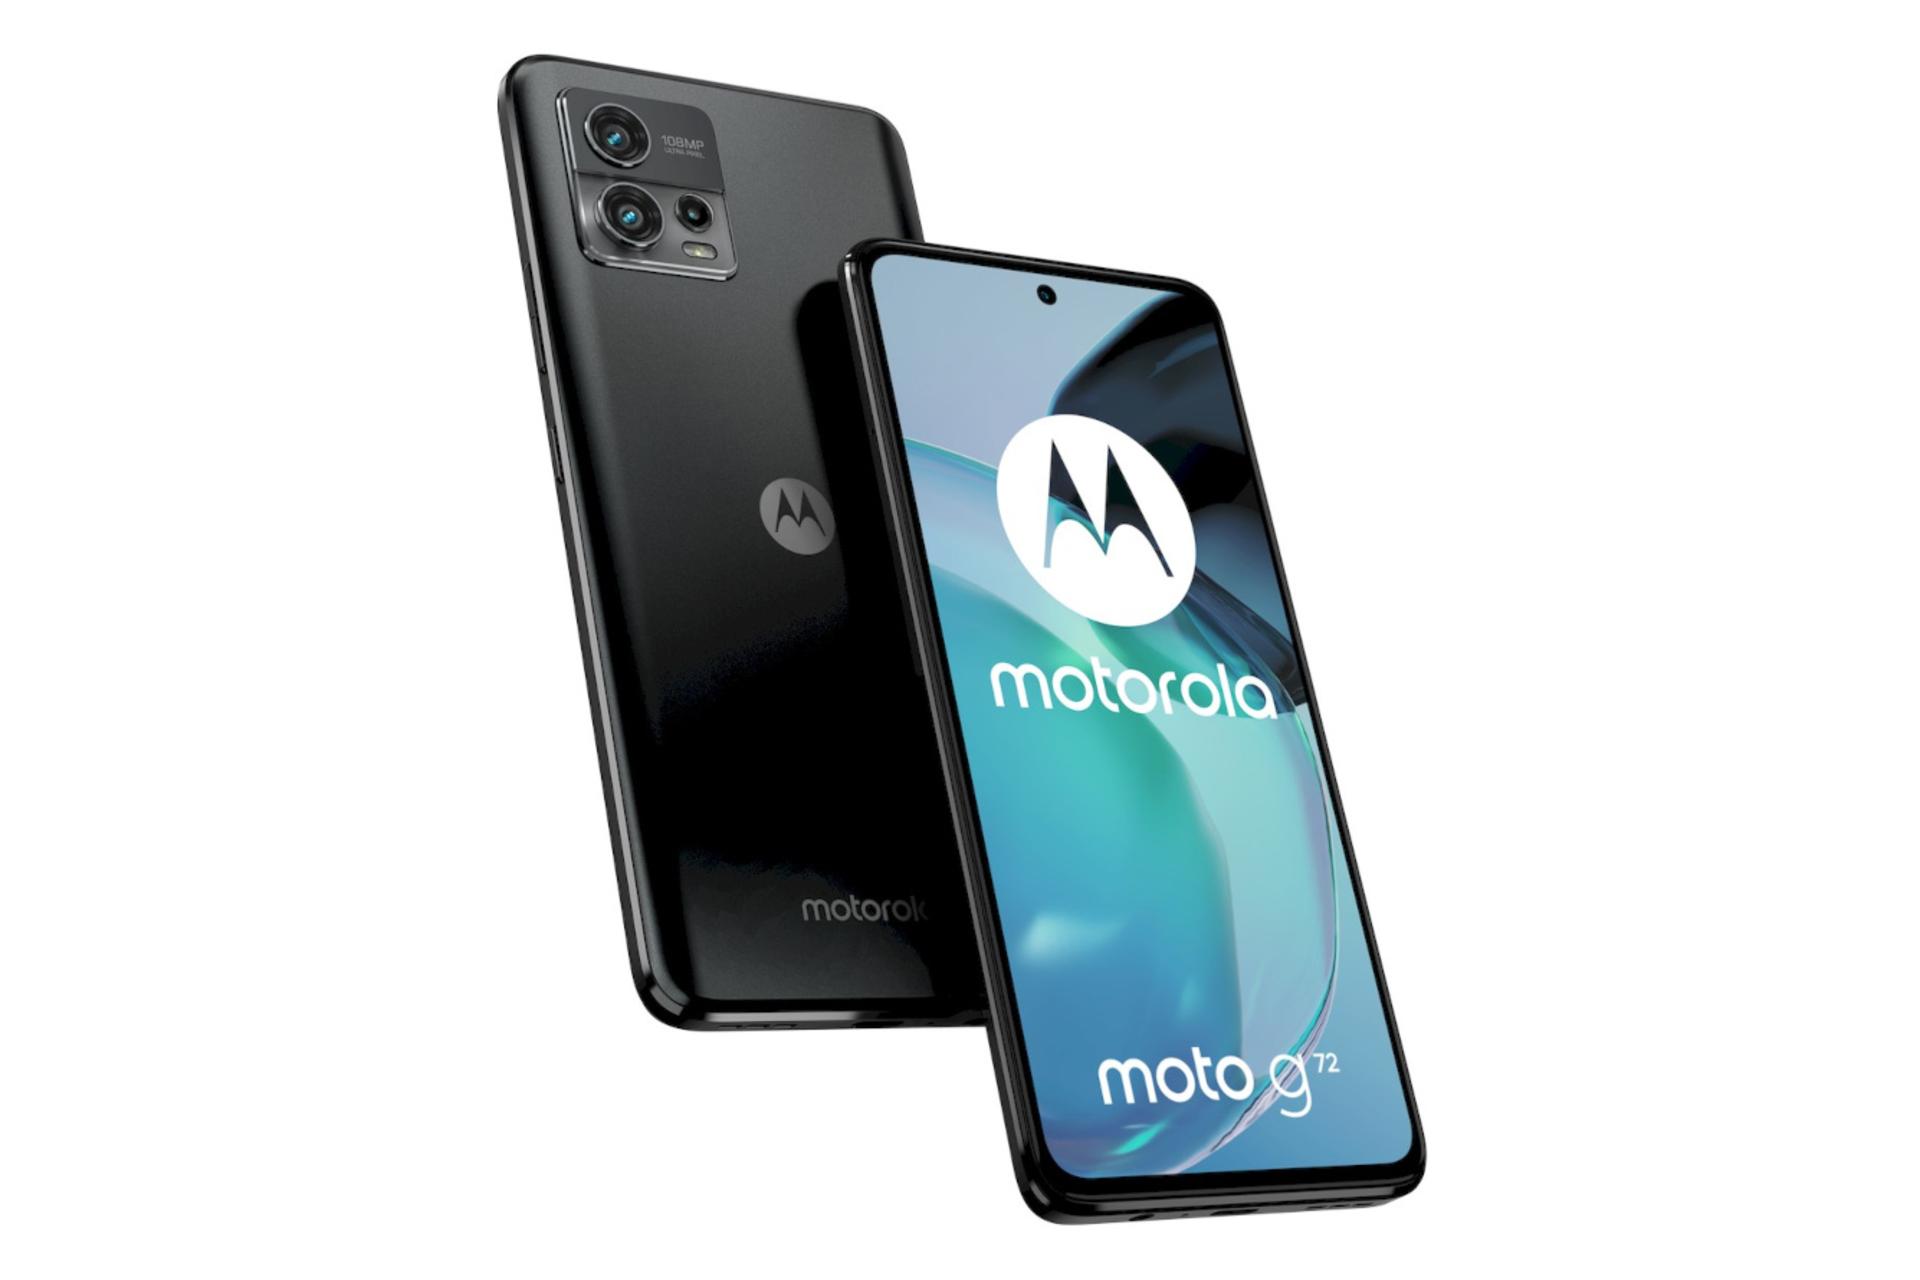 گوشی موبایل موتو G72 موتورولا / Motorola Moto G72 خاکستری تیره